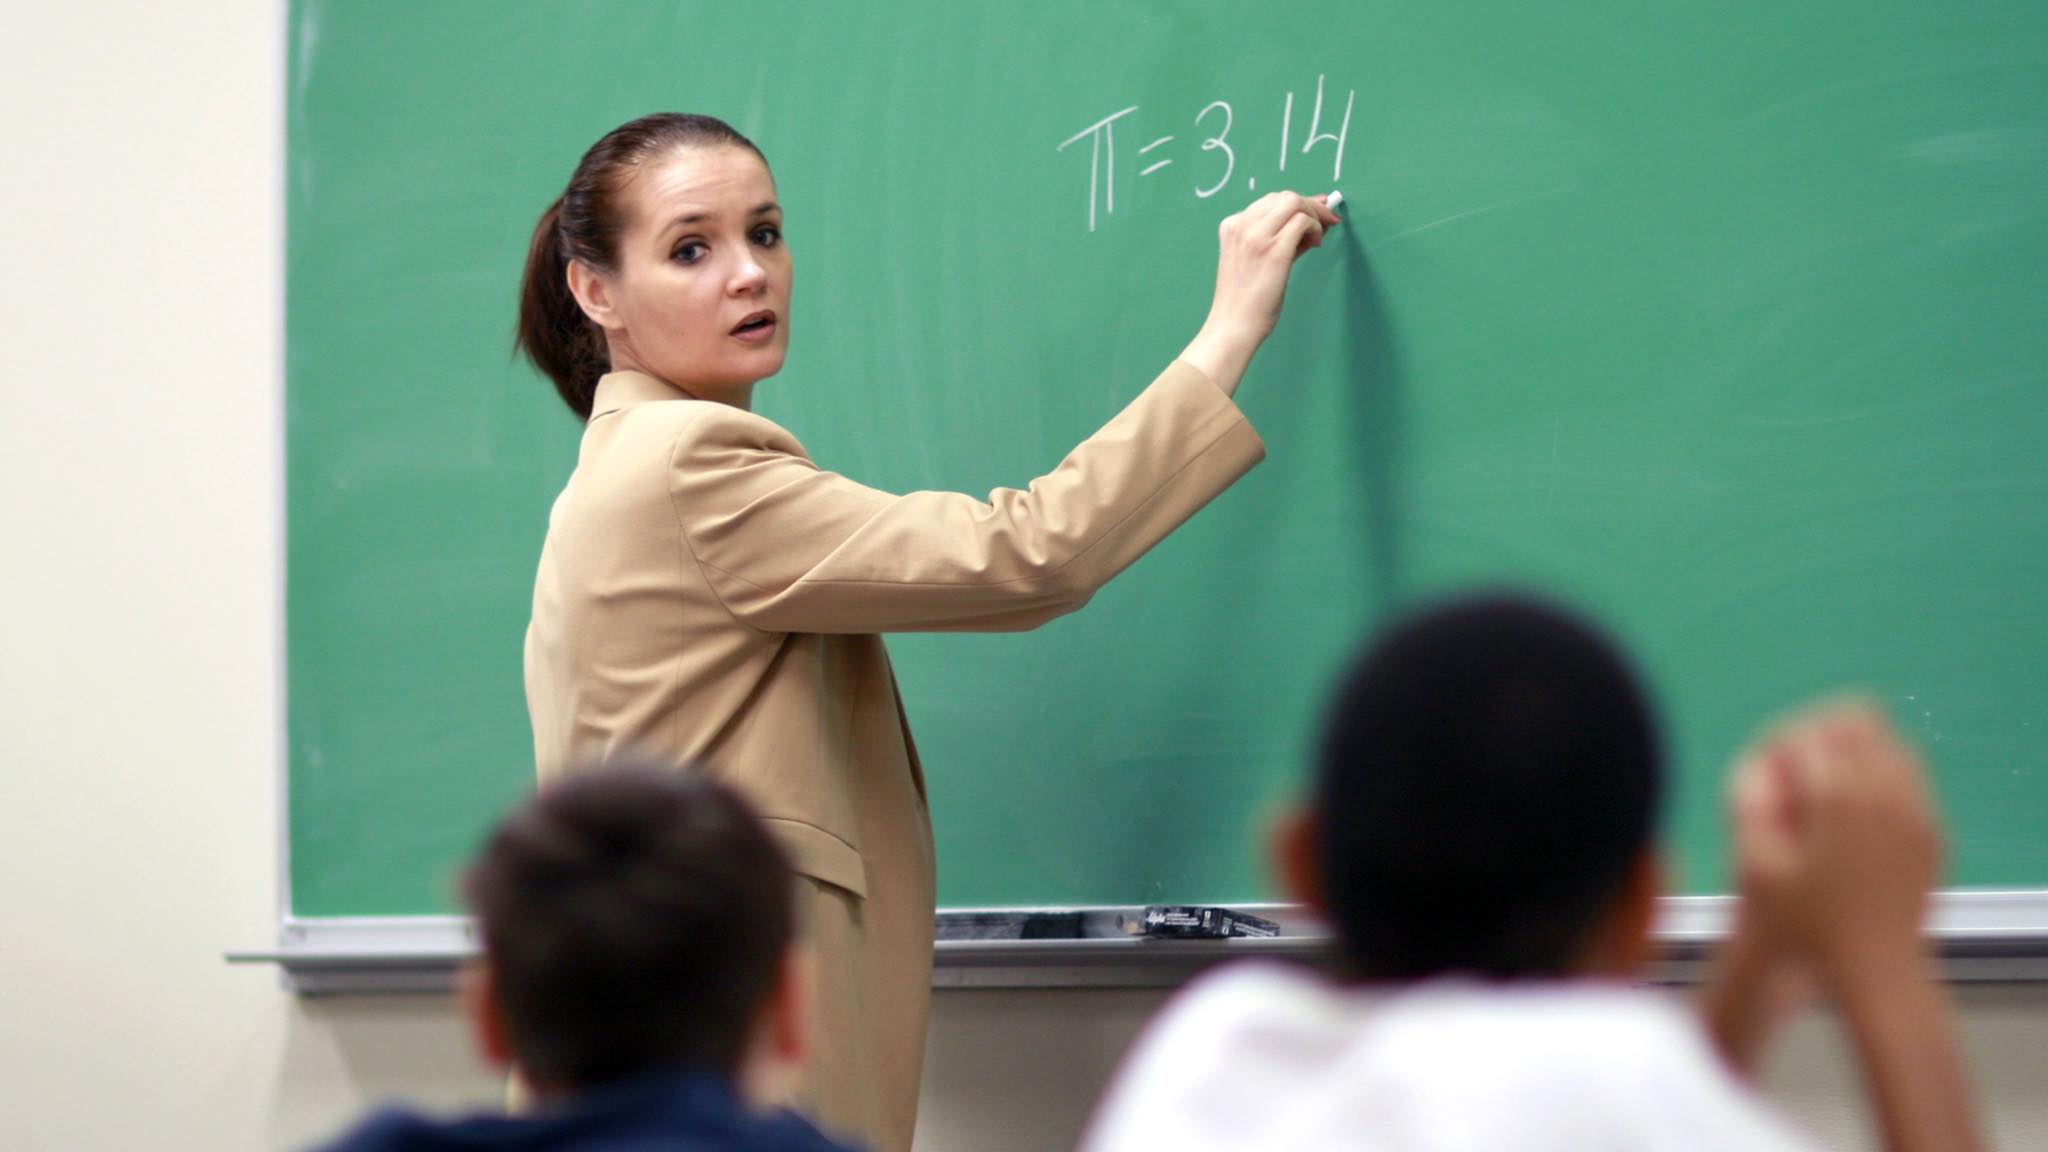 توجد شواغر للمعلمين في عدة تخصصات للعمل لدى مؤسسة تدريبية